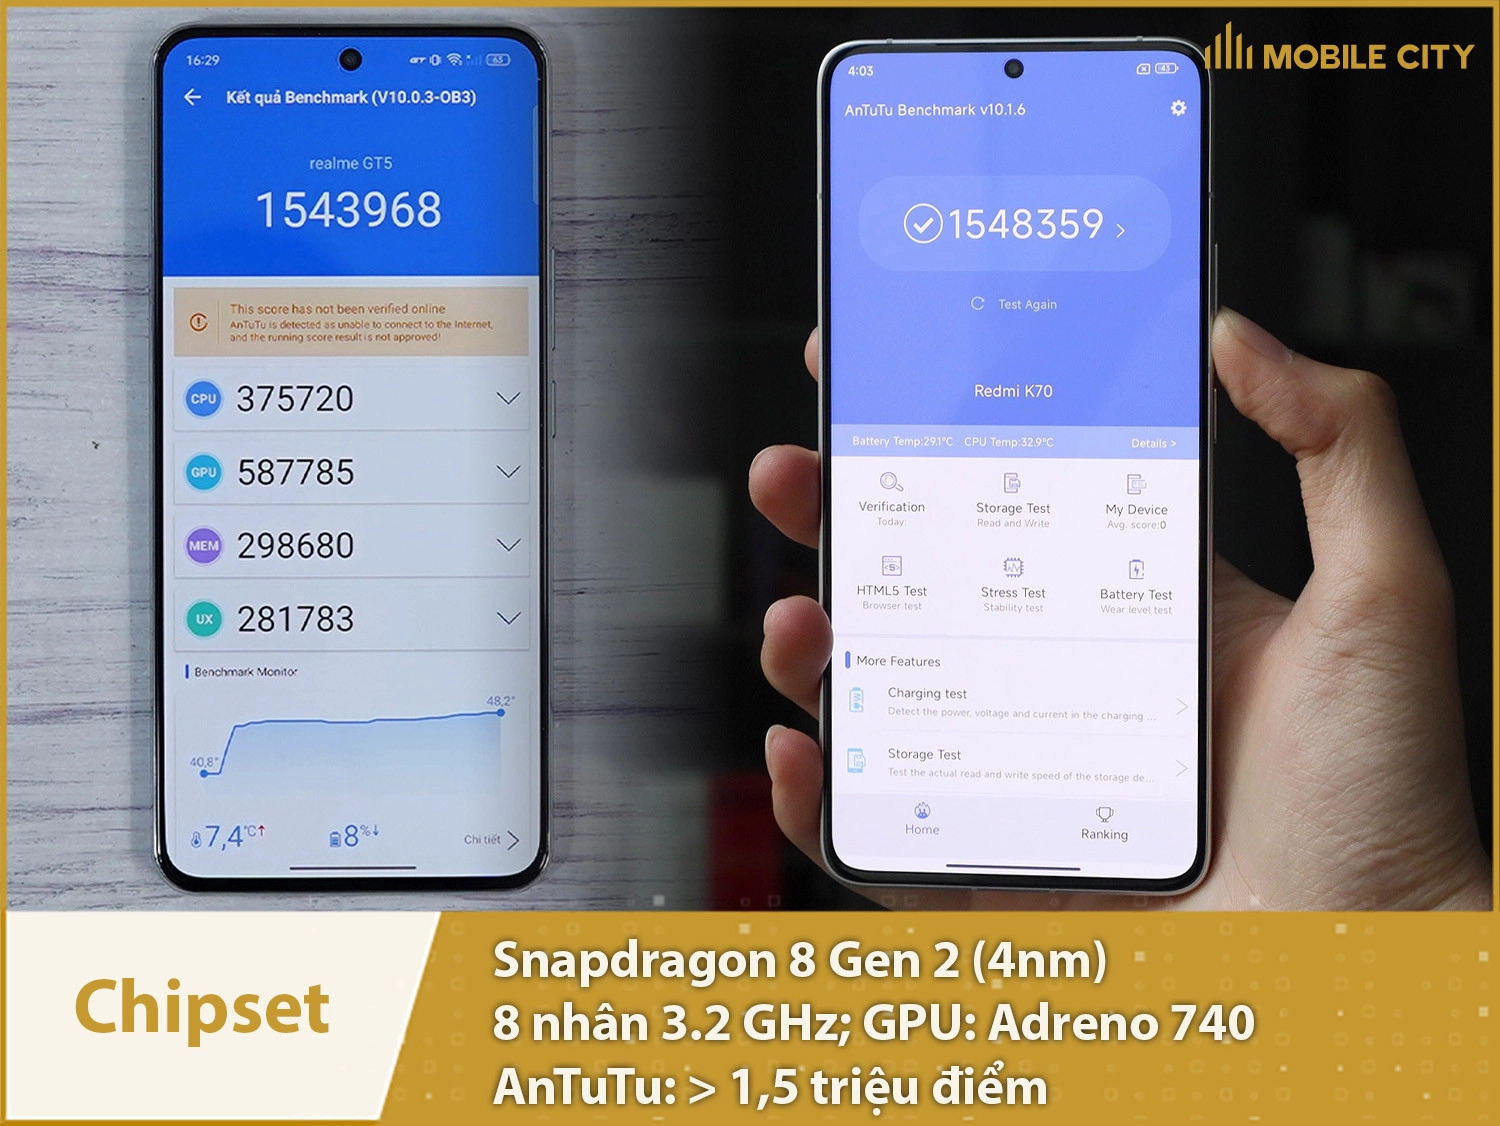 Chip Snapdragon 8 Gen 2 đạt trên 1,5 triệu điểm AnTuTu